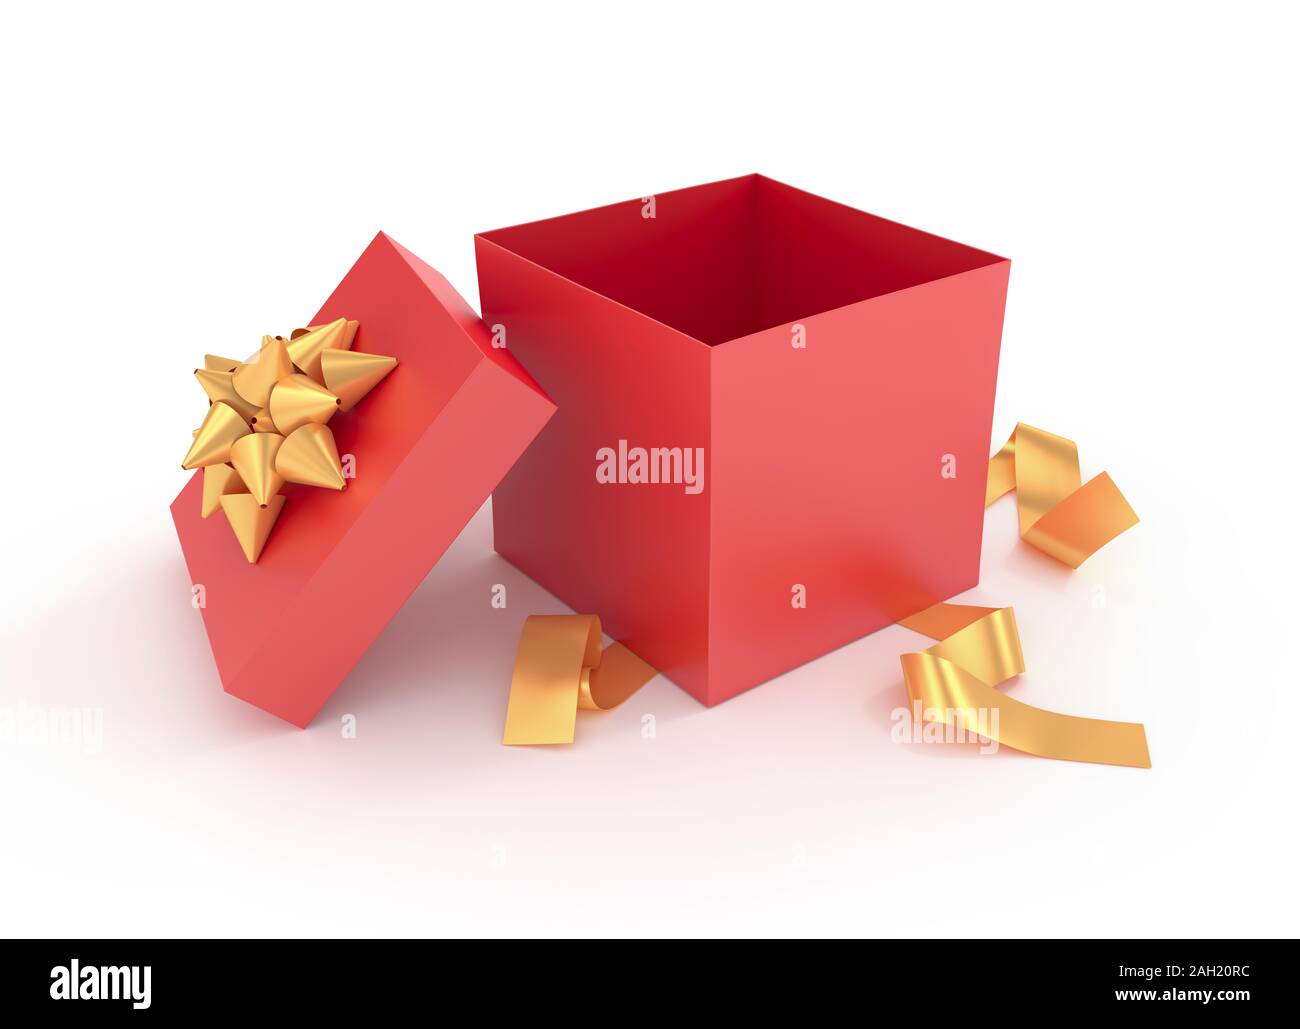 Disimballato elegante confezione regalo - Immagine 3D rappresentata Foto Stock